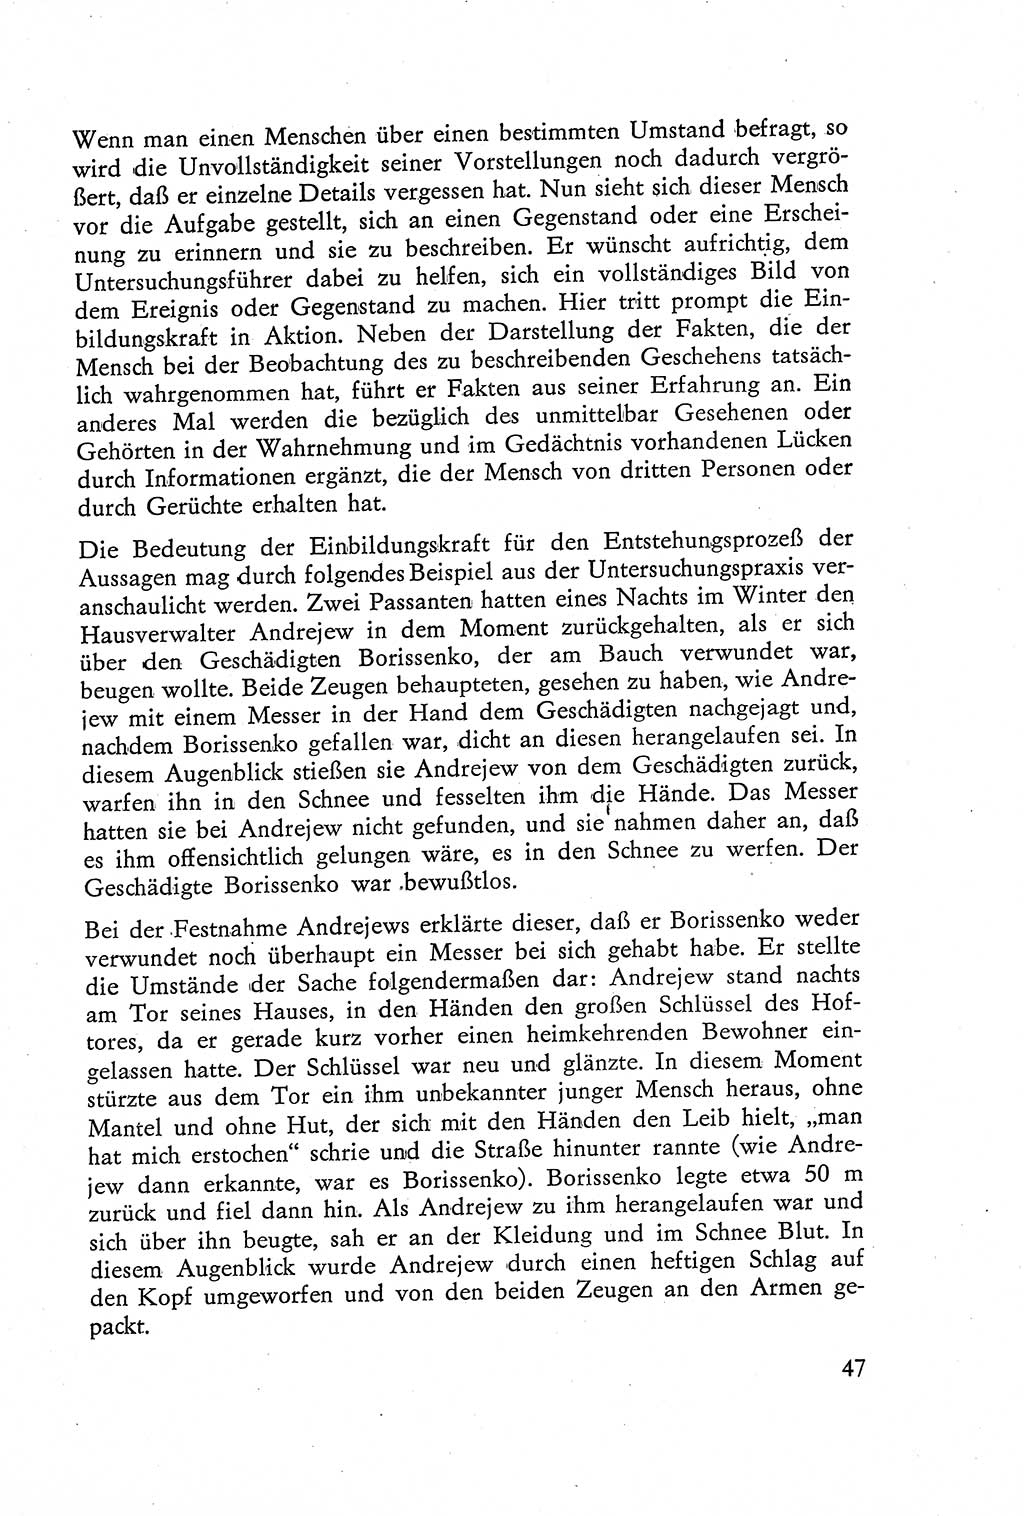 Die Vernehmung [Deutsche Demokratische Republik (DDR)] 1960, Seite 47 (Vern. DDR 1960, S. 47)